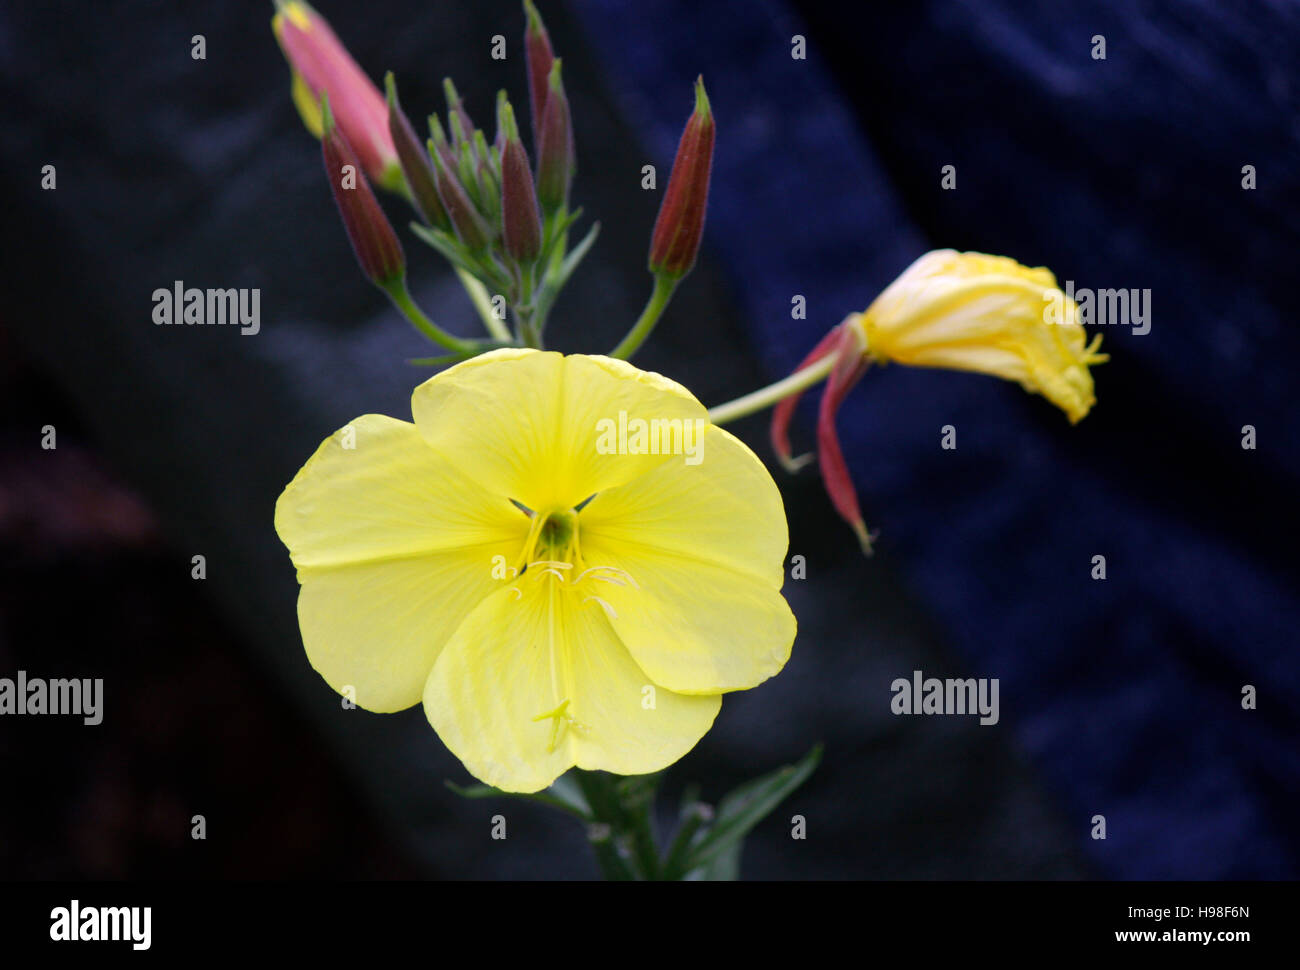 Blume, Alpen, Oesterreich. Stock Photo